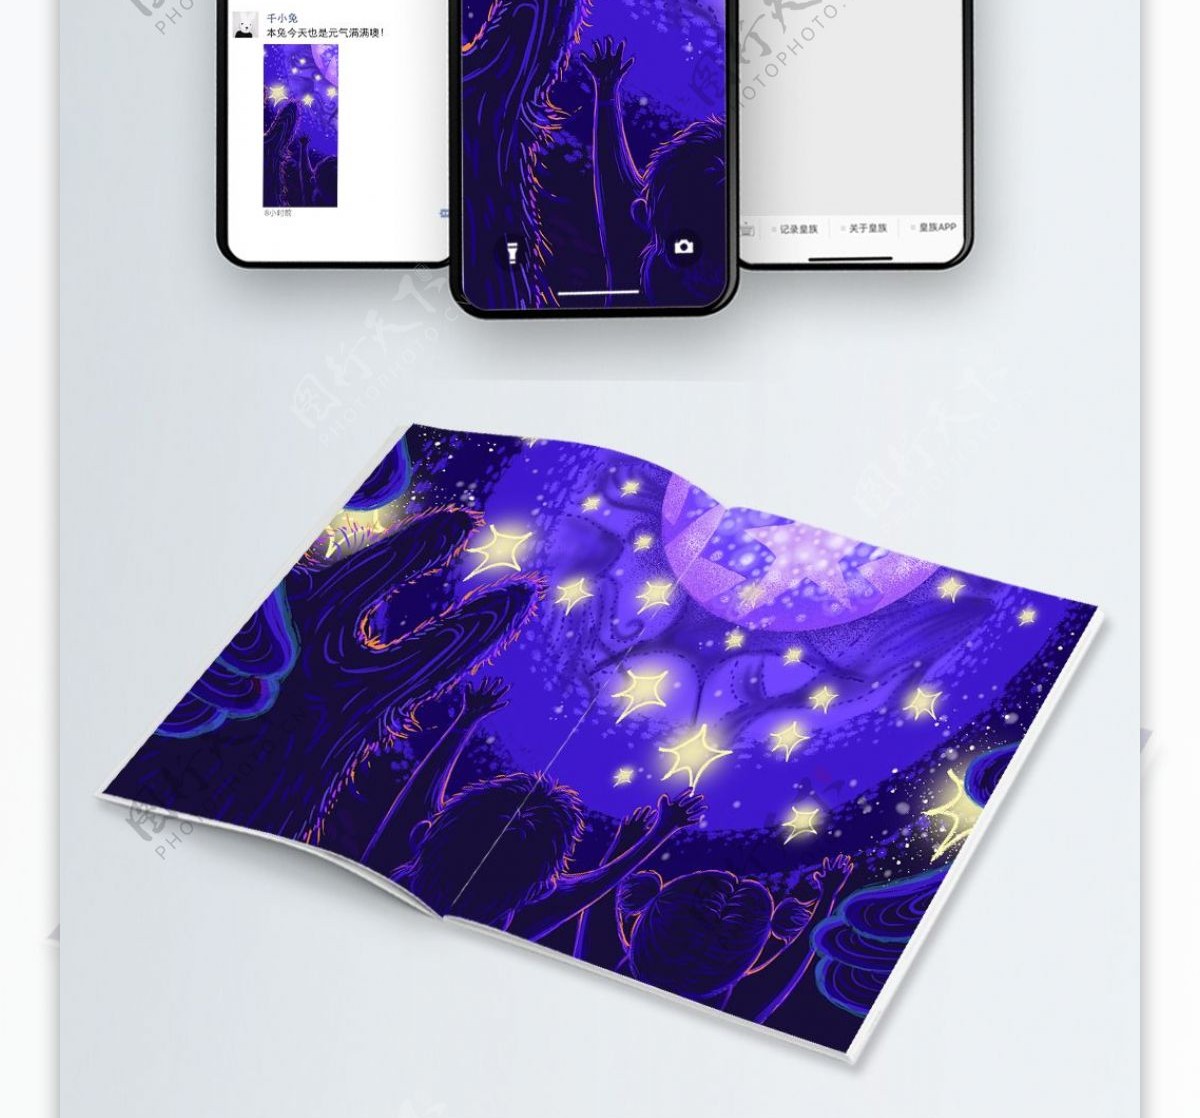 紫色肌理感梦幻星空插画手机用图